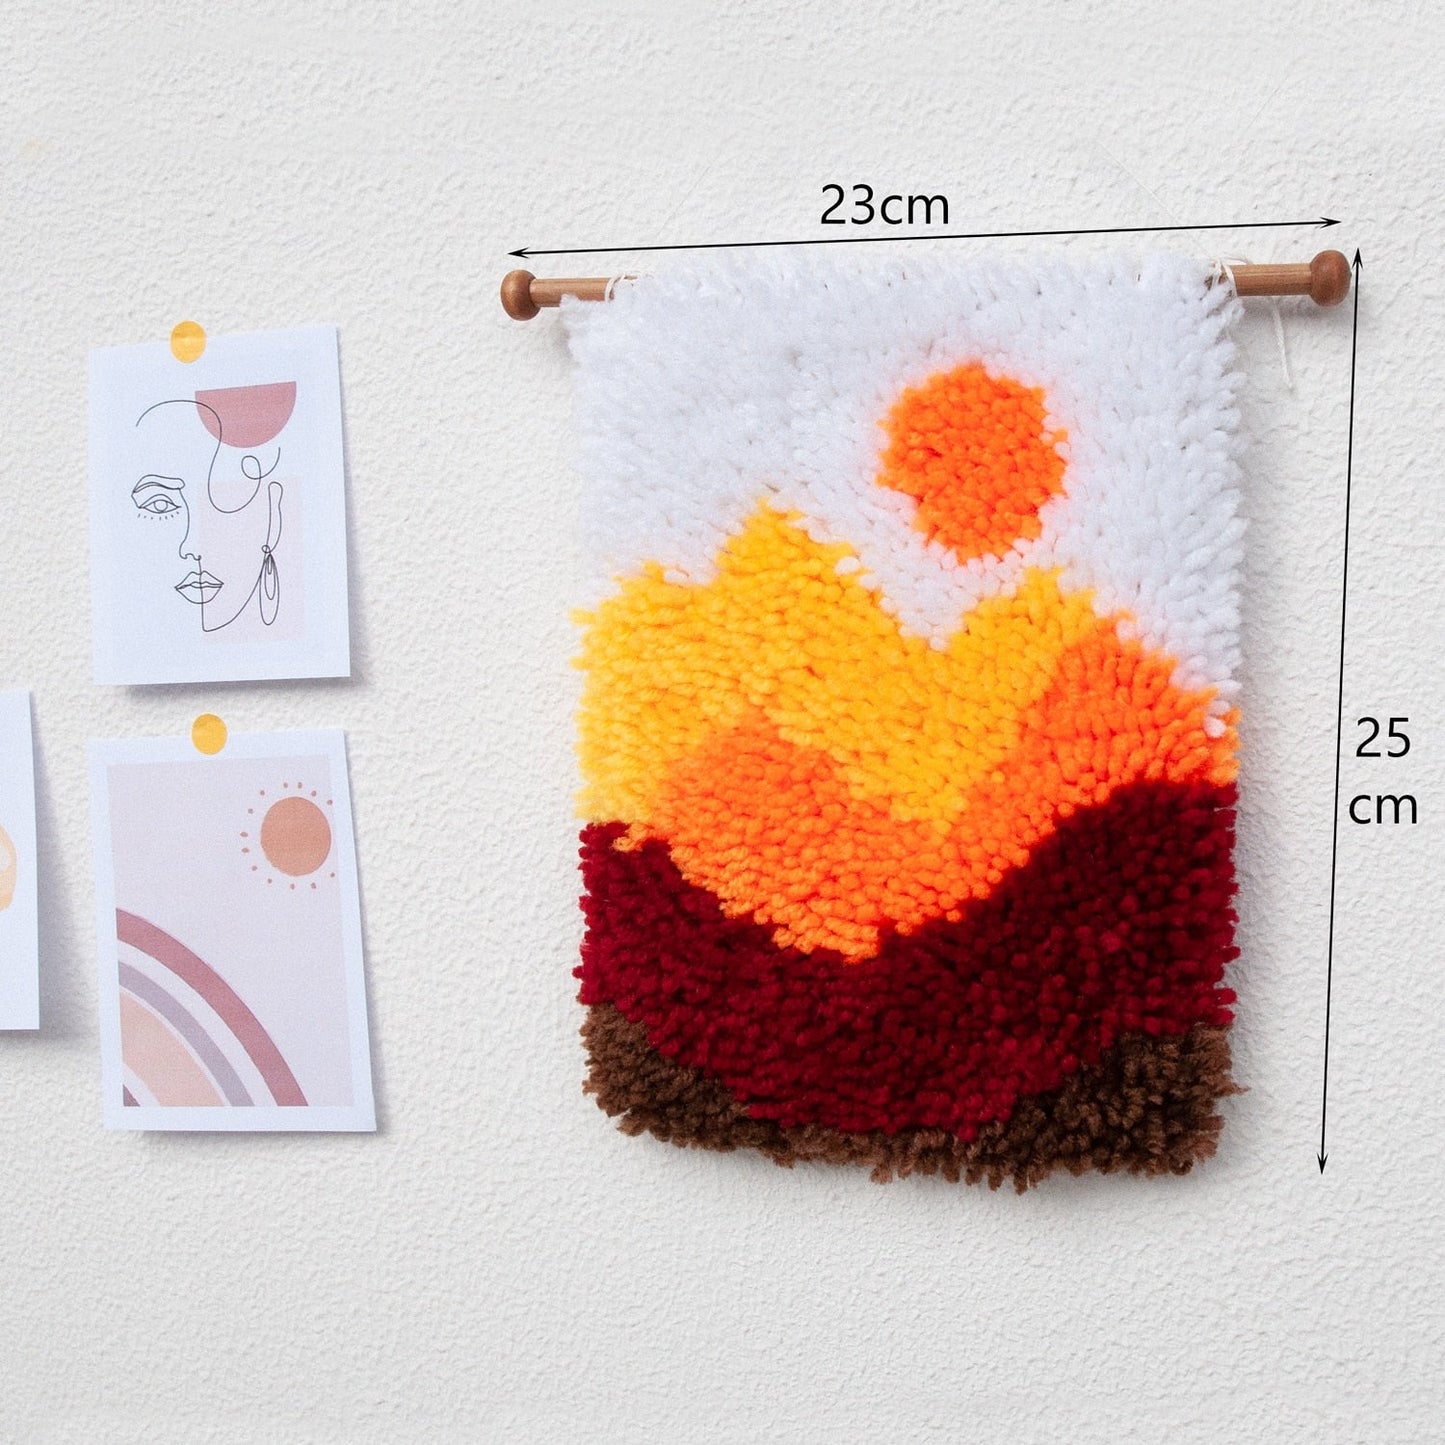 Beginner Mini Latch Hook Wall Hanging Kit Scenery Series - Orange Sunset Mountains